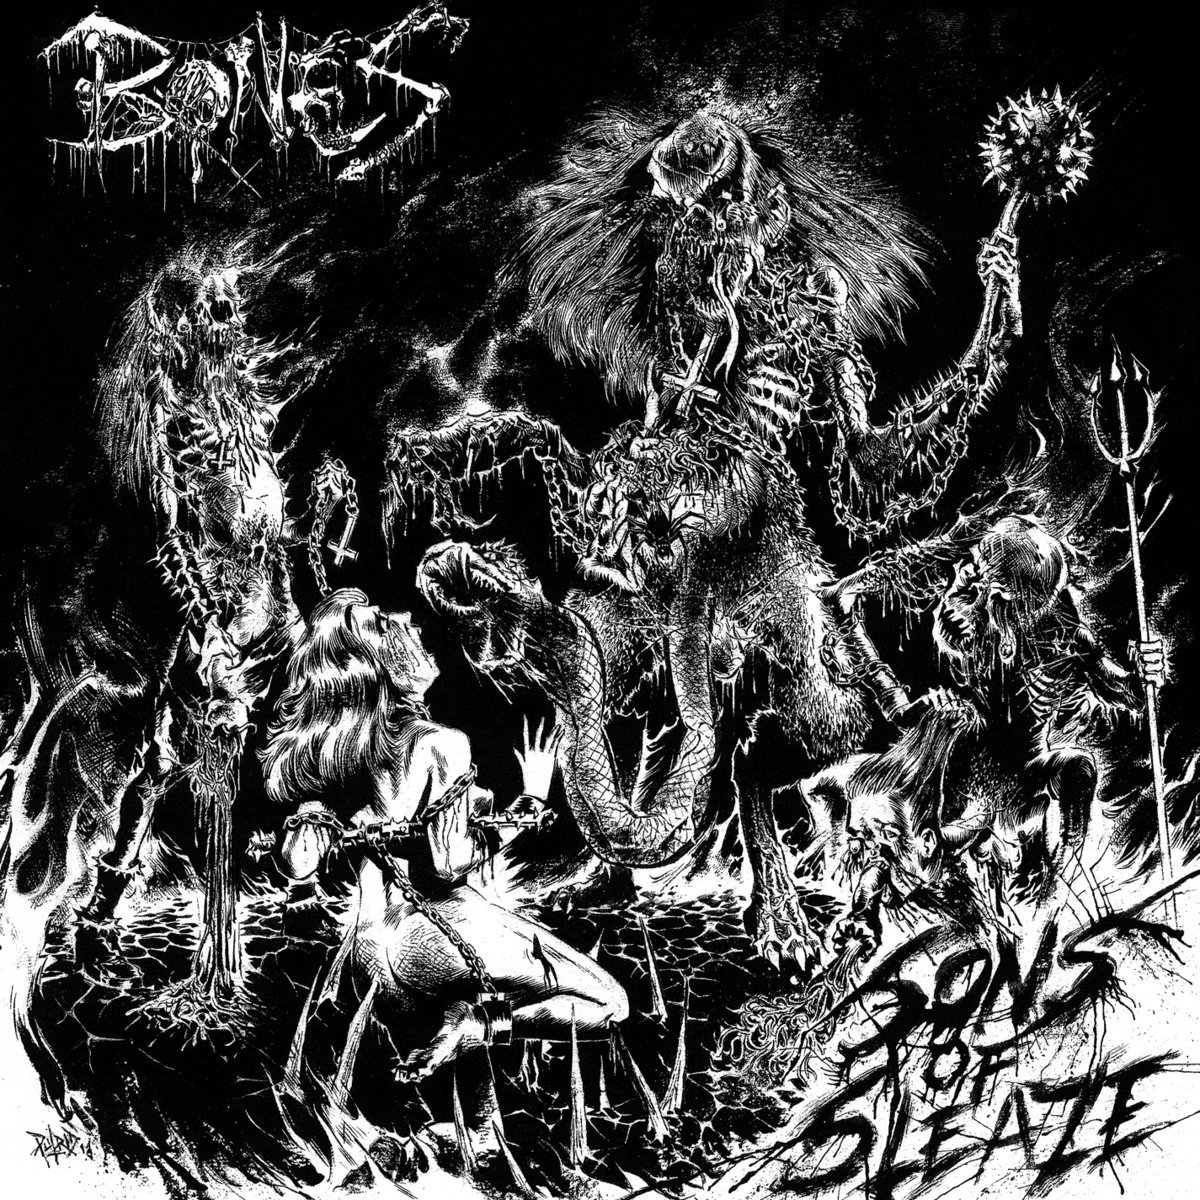 Bones last. Bones обложка. Bones livingsucks. Bones обложки 2021. Bones альбомы.